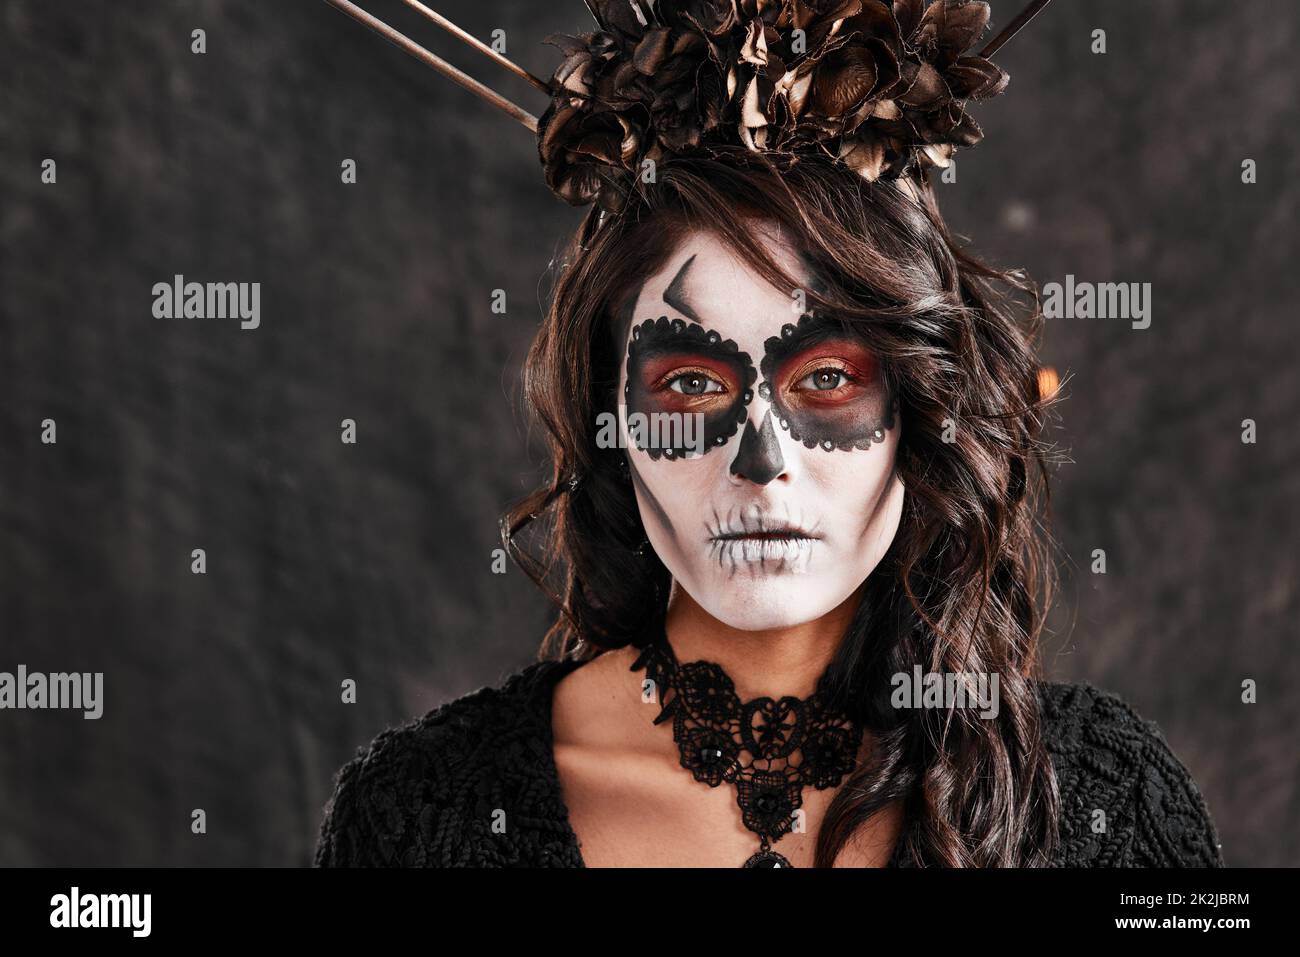 Zeremonielle Make-up für den Anlass. Verkürztes Porträt einer attraktiven jungen Frau in ihrem Halloween-Kostüm im mexikanischen Stil. Stockfoto